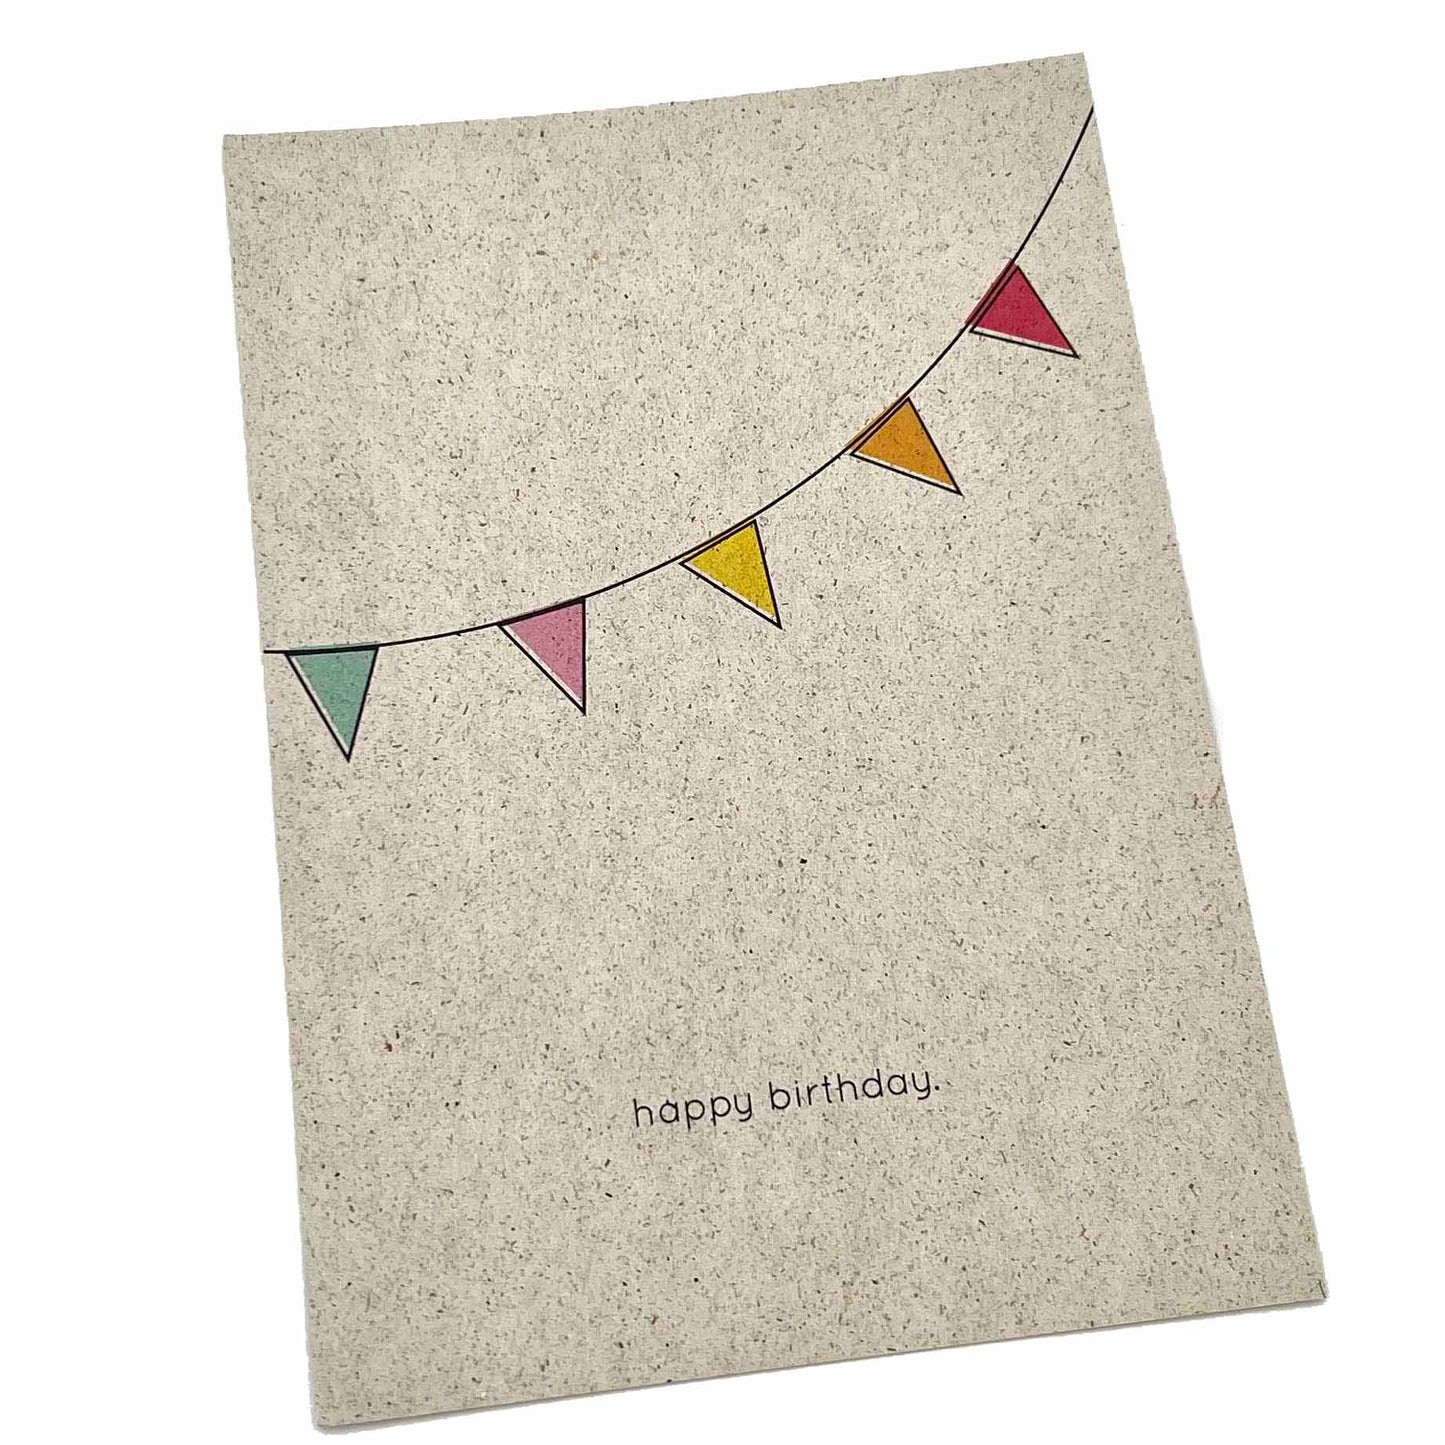 SVEEKA nachhaltige Postkarte "happy birthday" mit bunter Wimpelkette aus Graspapier